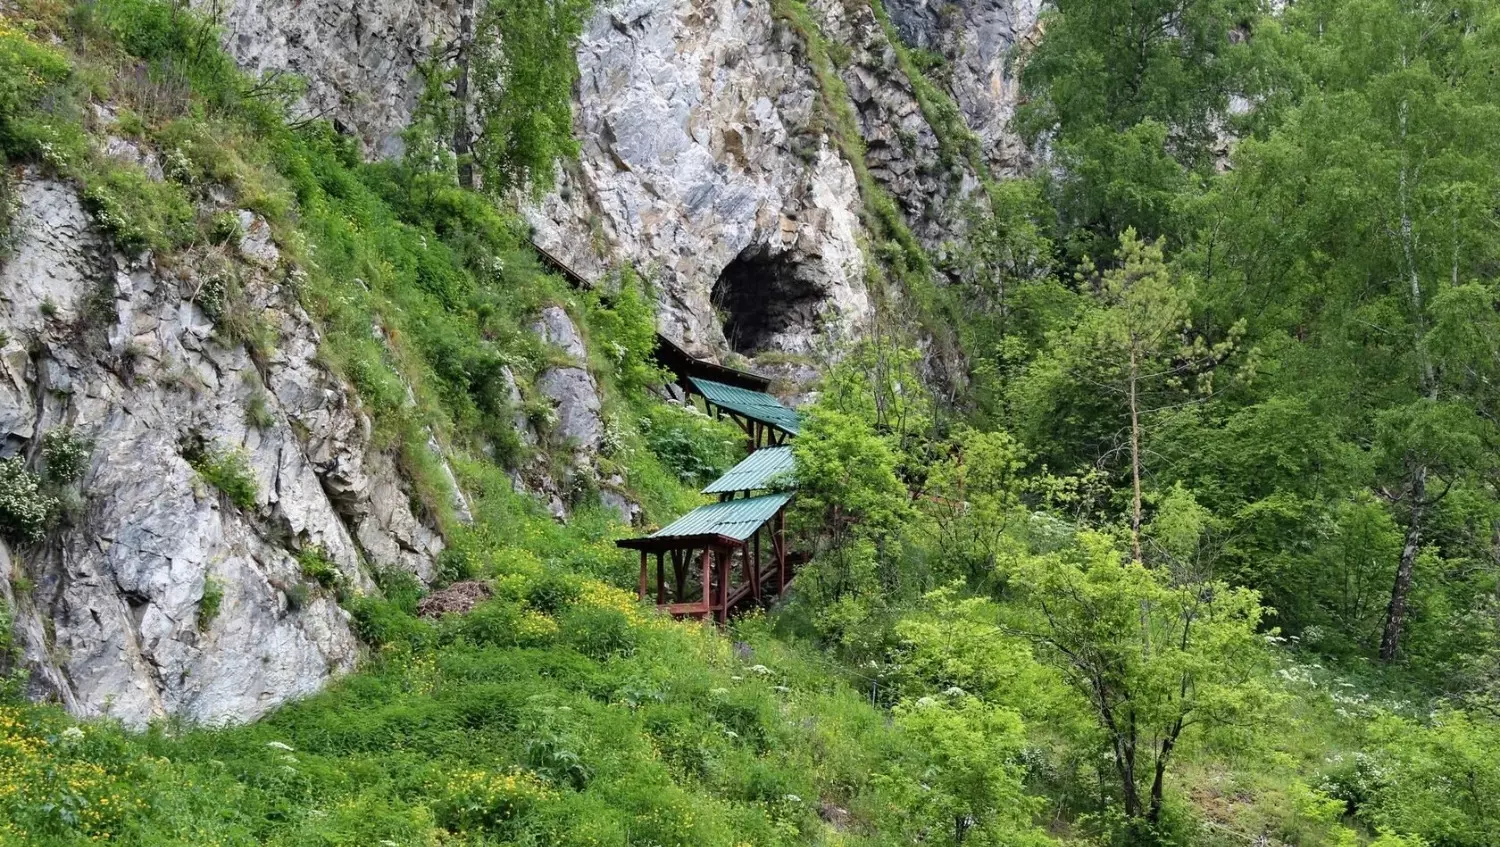 Тавдинские или Талдинские пещеры — массив из большого числа пещер карстового происхождения в Алтайском районе Алтайского края